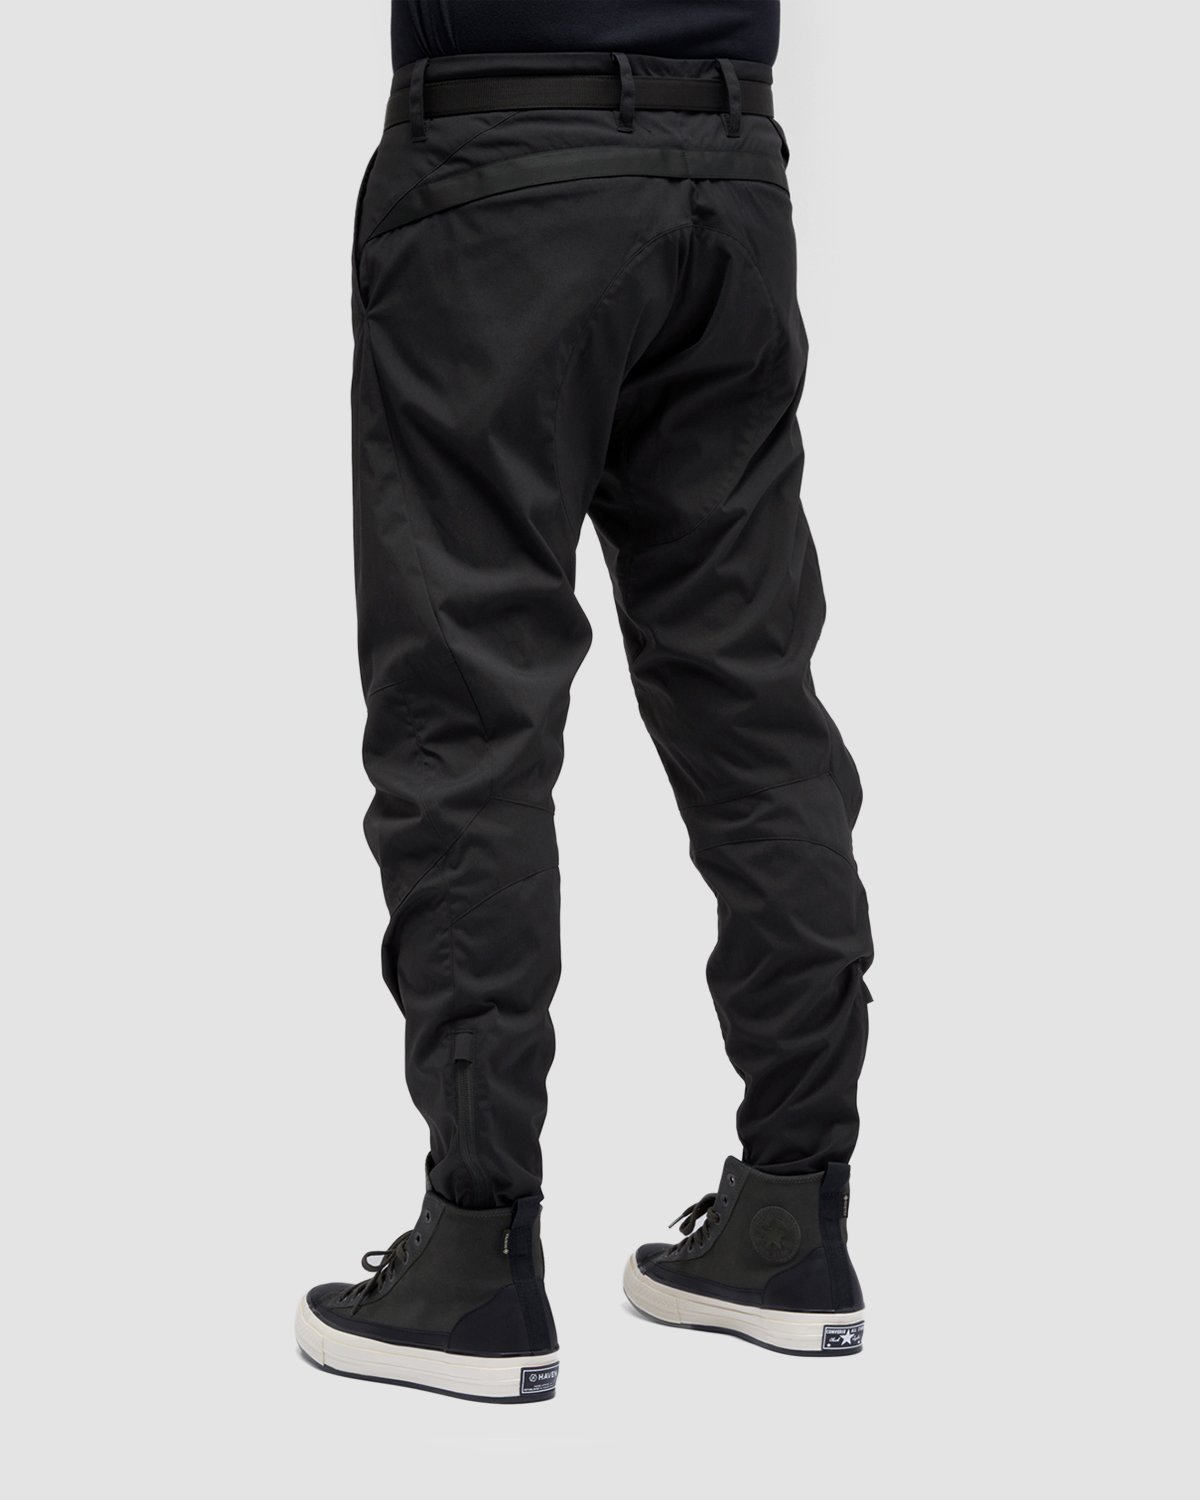 ACRONYM - P10-E Pant Black - Clothing - Black - Image 9